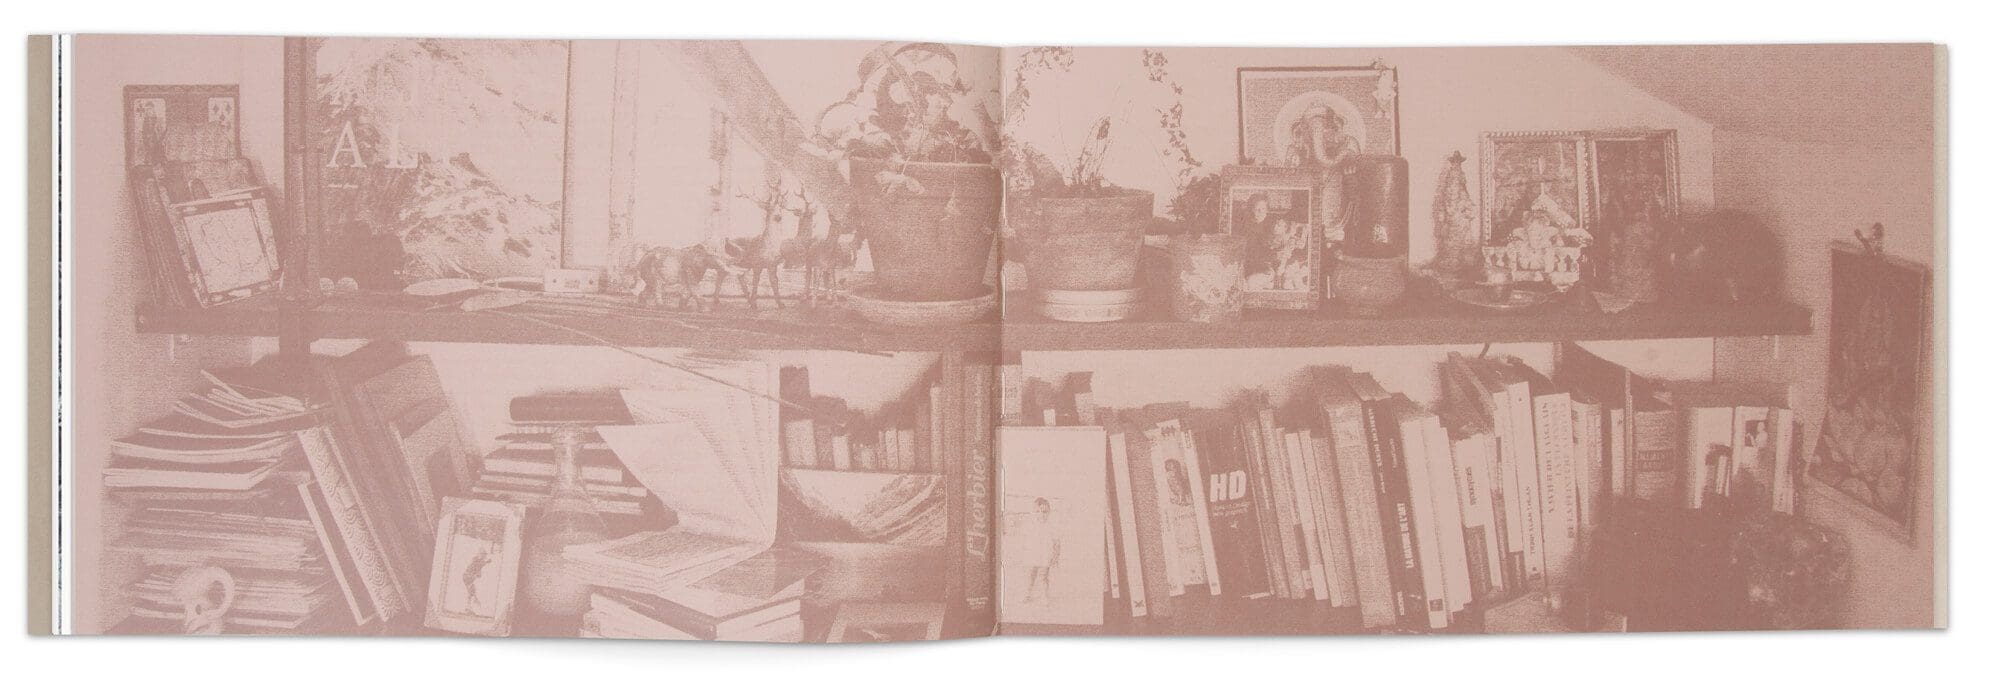 Double page de l'étagère dans l'atelier d'Hélène Muheim,i impression sur papier fedrigoni teinté de rose, direction artistique IchetKar